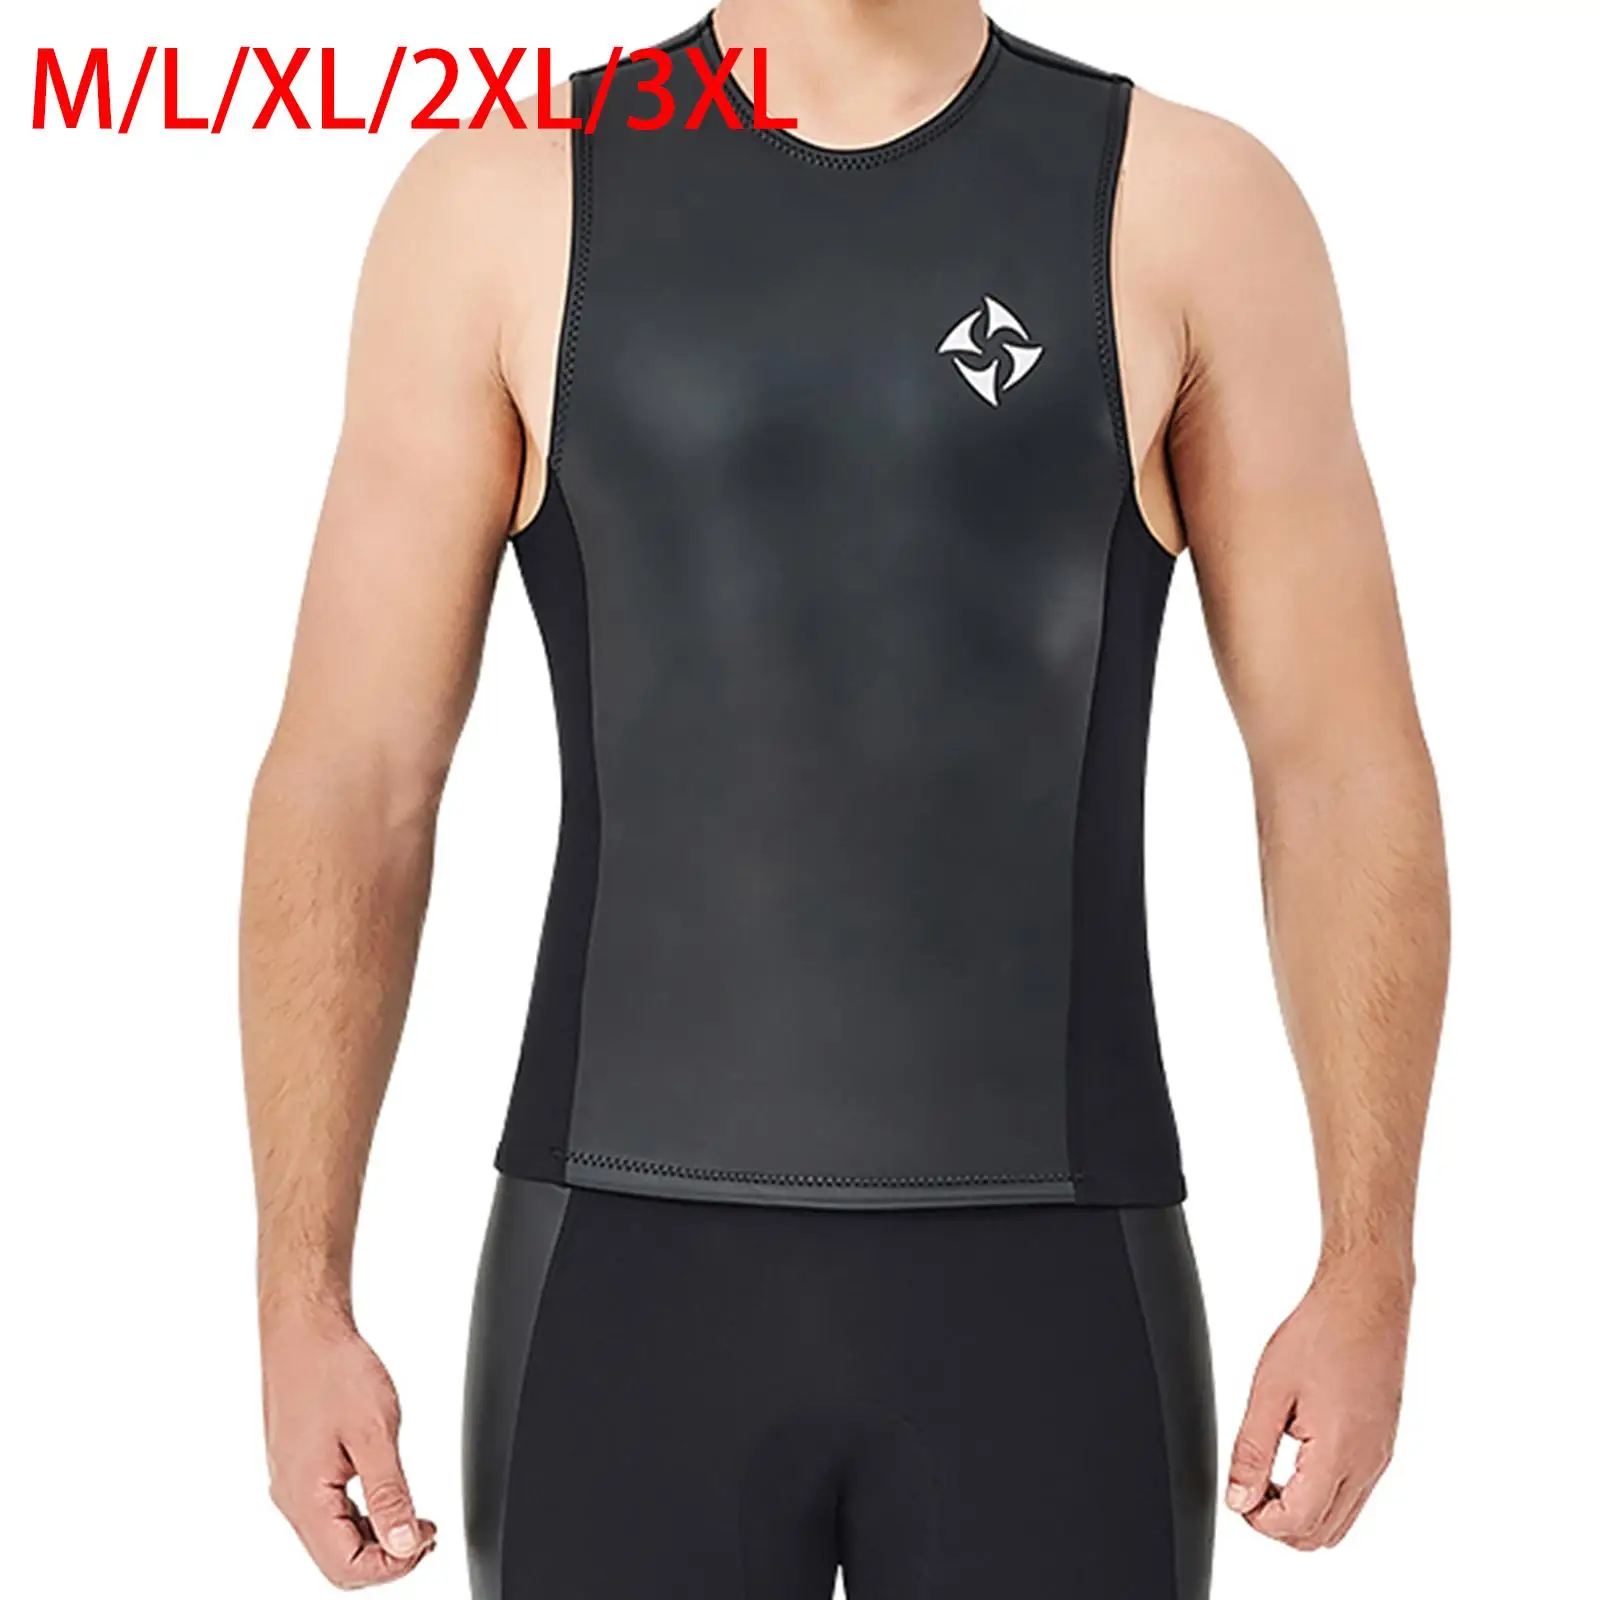 Wetsuit Vest 2mm Neoprene Top Sleeveless for Men Diving Surfing Swimming Sailing